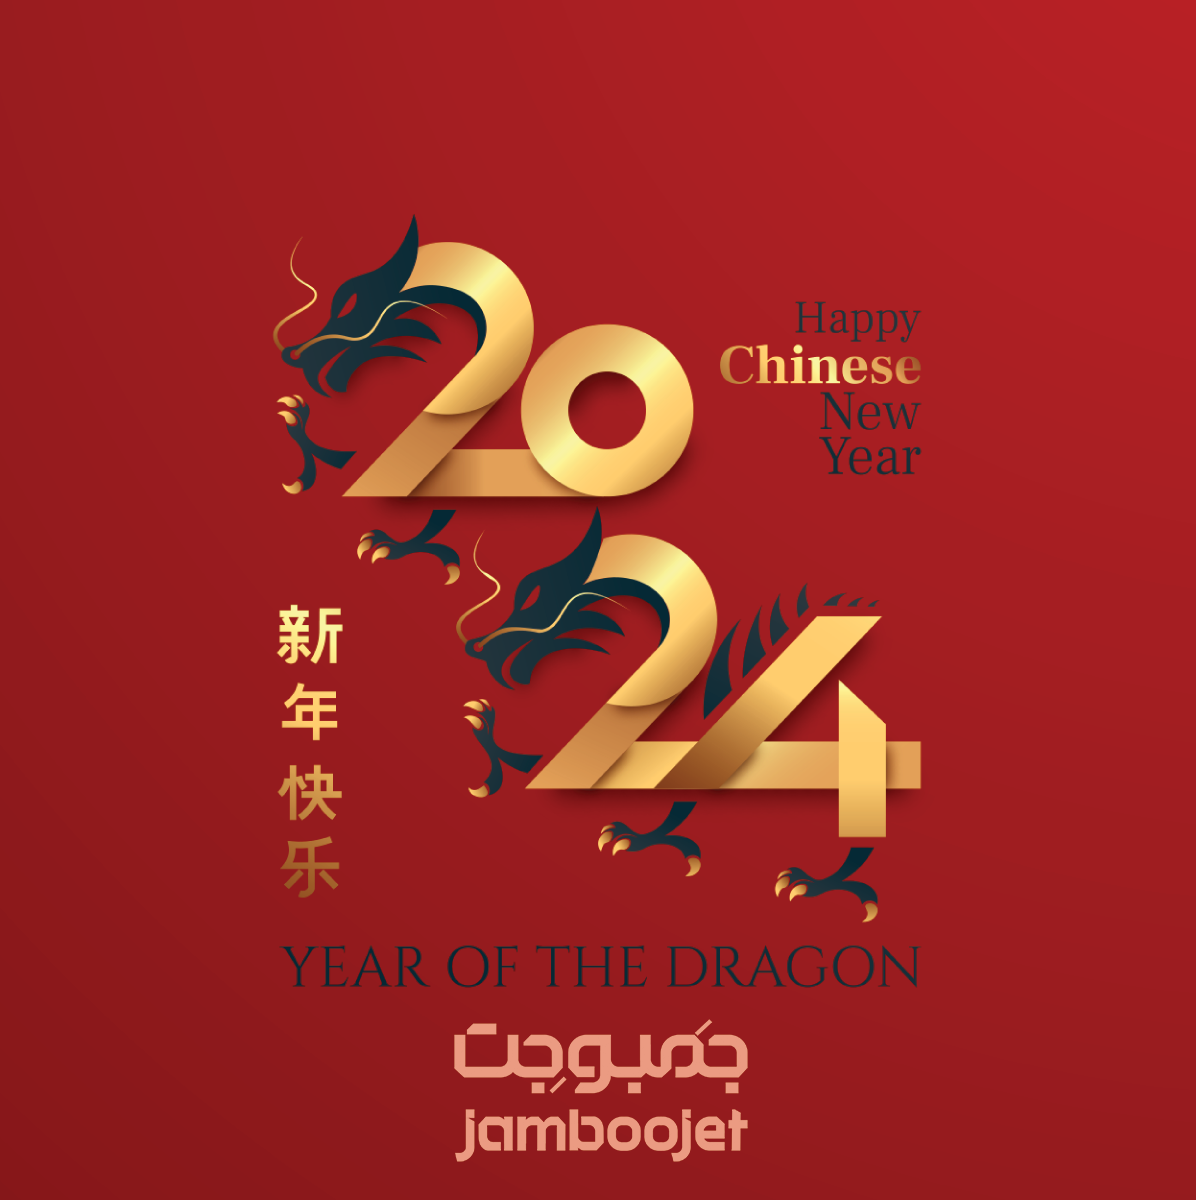 سال نو چینی و تعطیلات رسمی چین